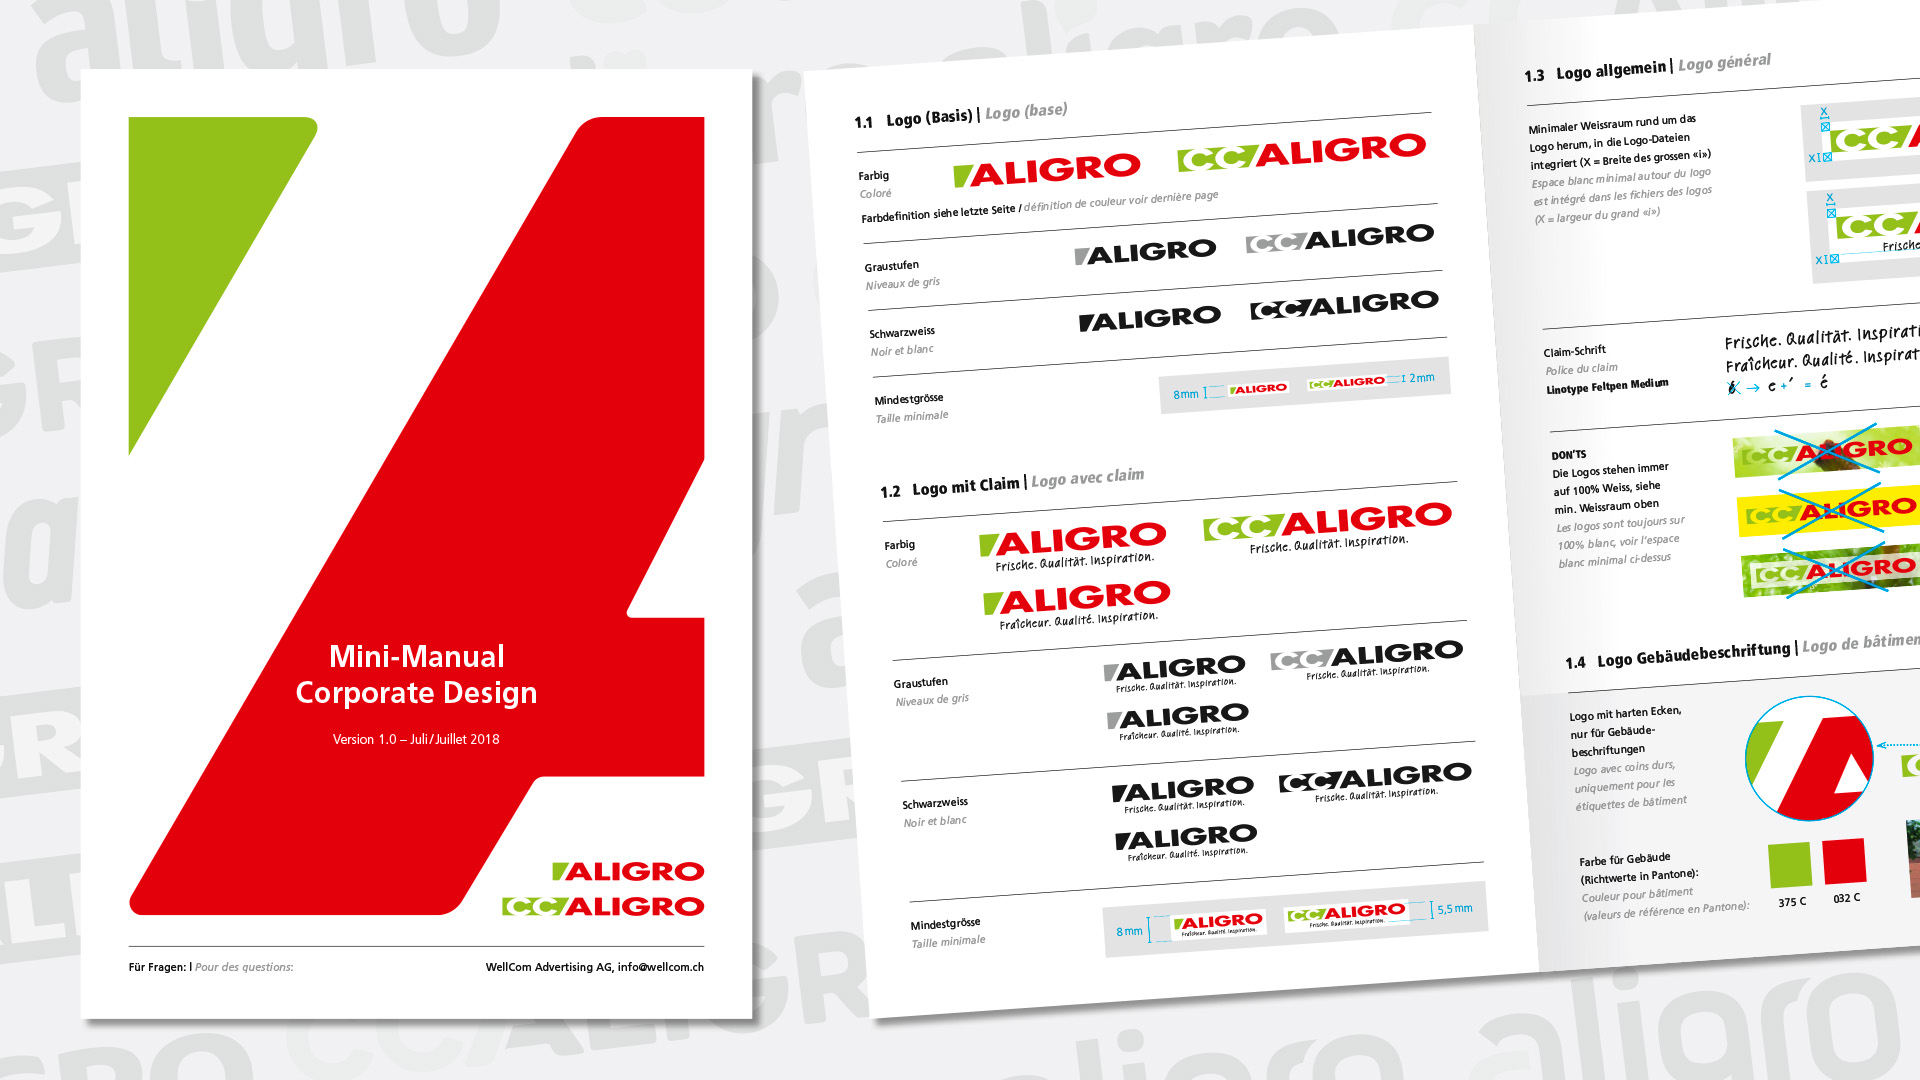 CC Aligro – Corporate Design